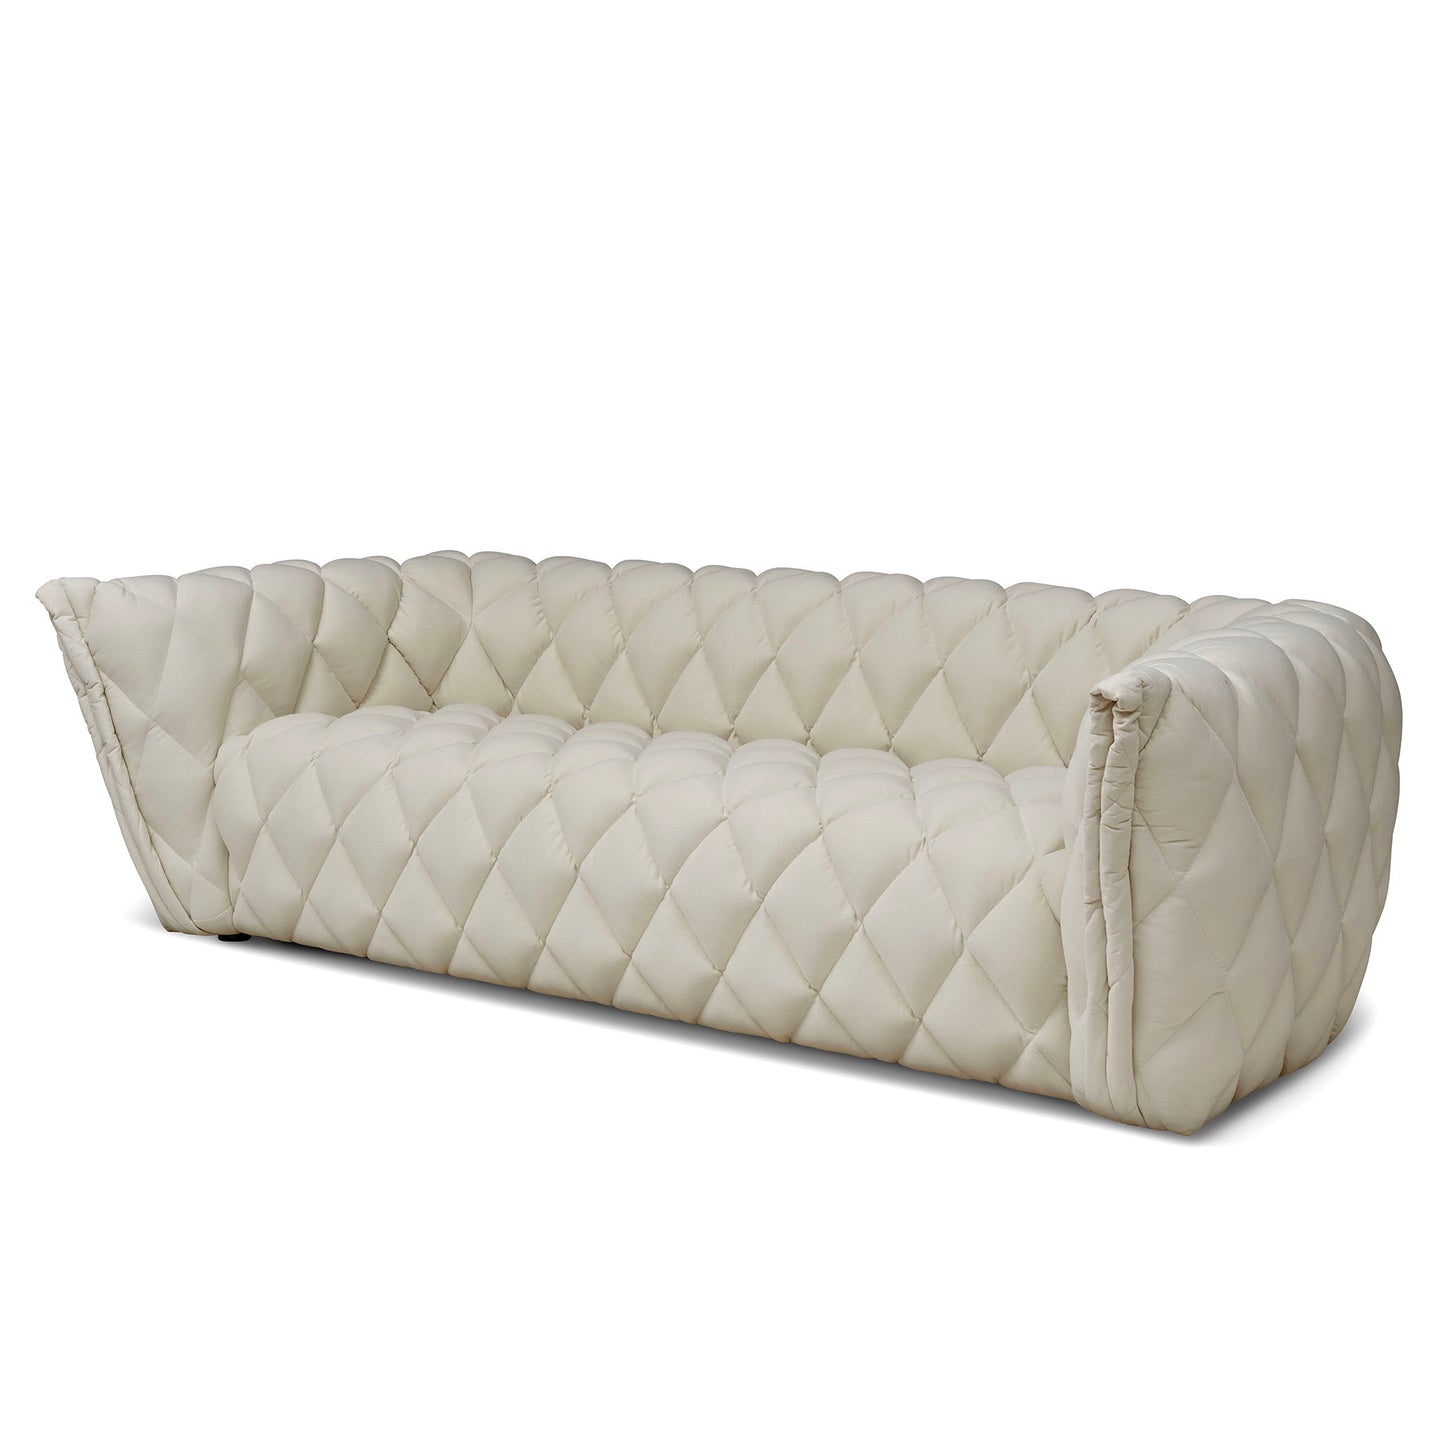 Vit chesterfield soffa i ett impregnerat tyg. Madison är en design soffa i vitt tyg